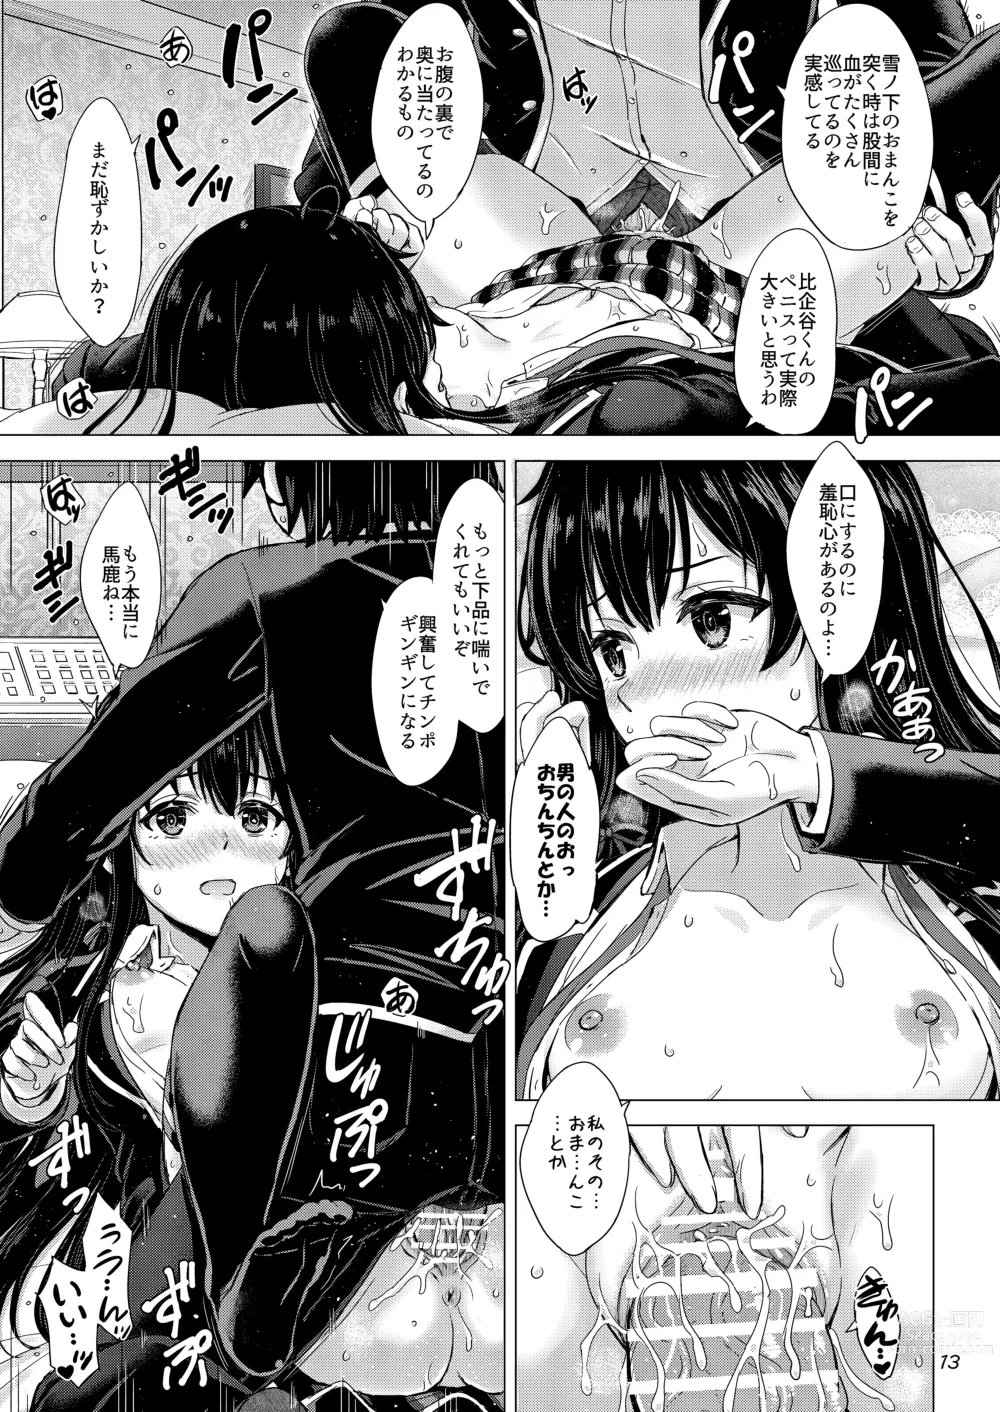 Page 12 of doujinshi Yukinoshita Shimai to Iyarashii Futari no Himegoto. - The Yukinoshita sisters each have sex with hachiman.